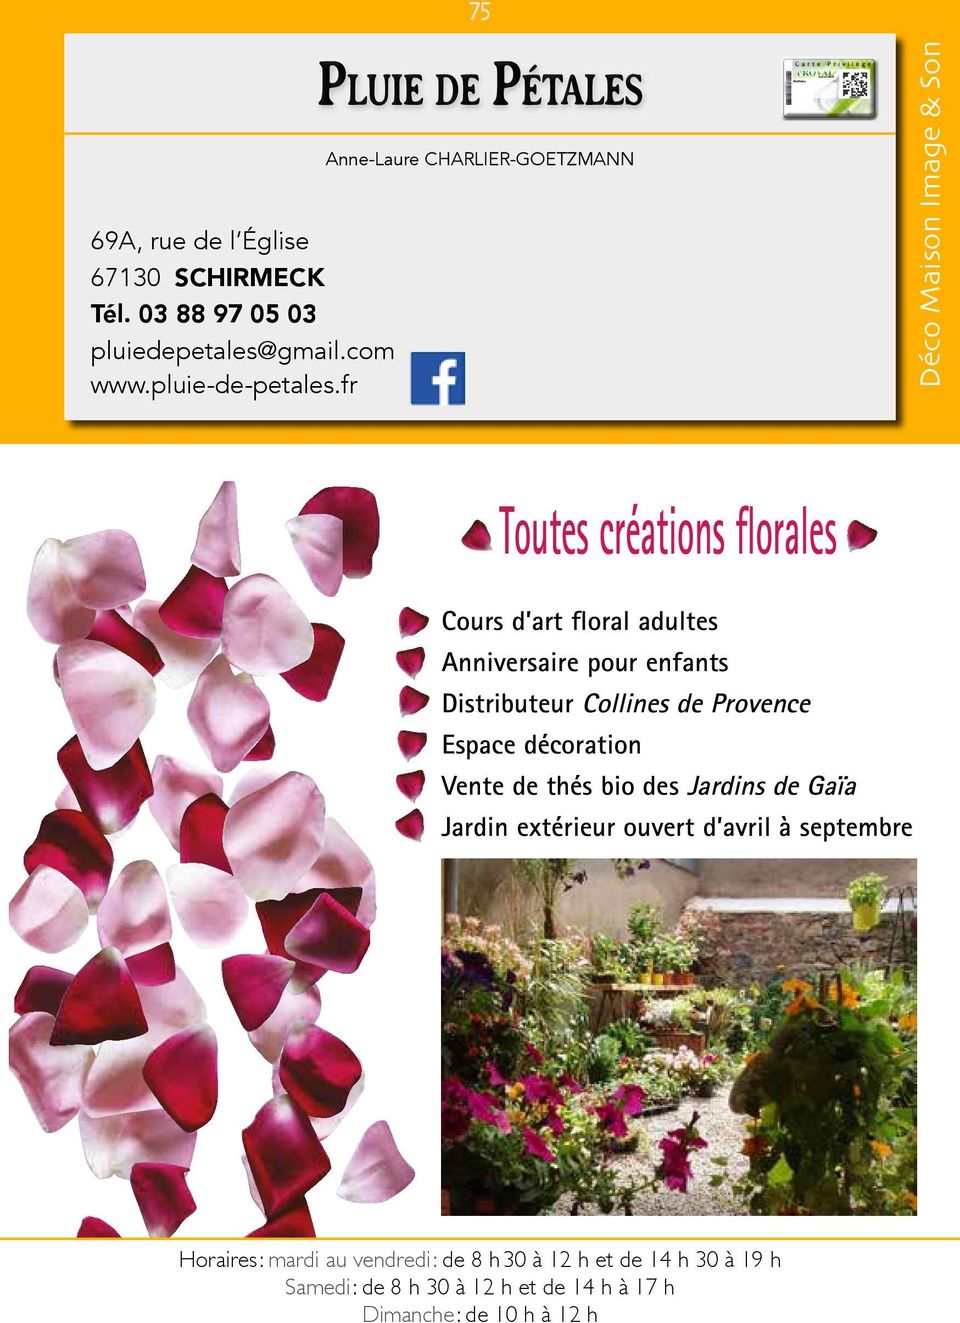 enfants Distributeur Collines de Provence Espace décoration Vente de thés bio des Jardins de Gaïa Jardin extérieur ouvert